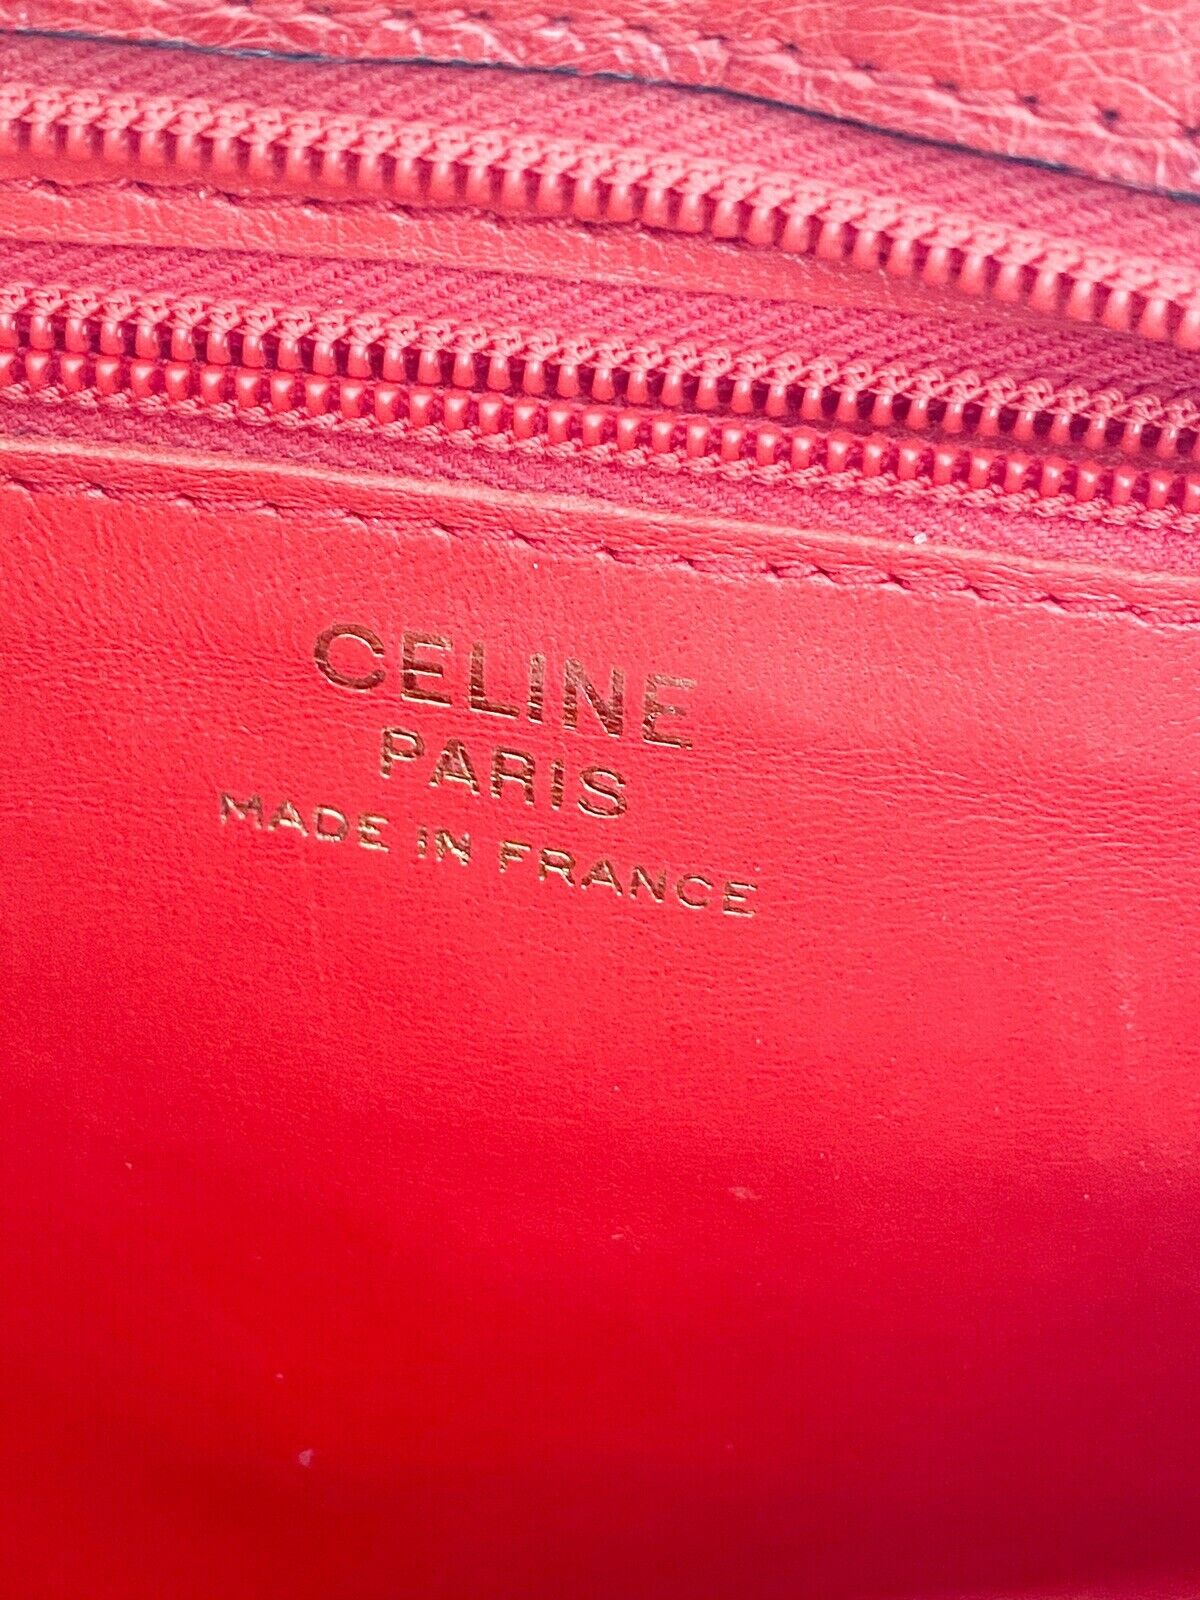 Celine Paris Made in France Red Color Ostrich Shoulder Bag